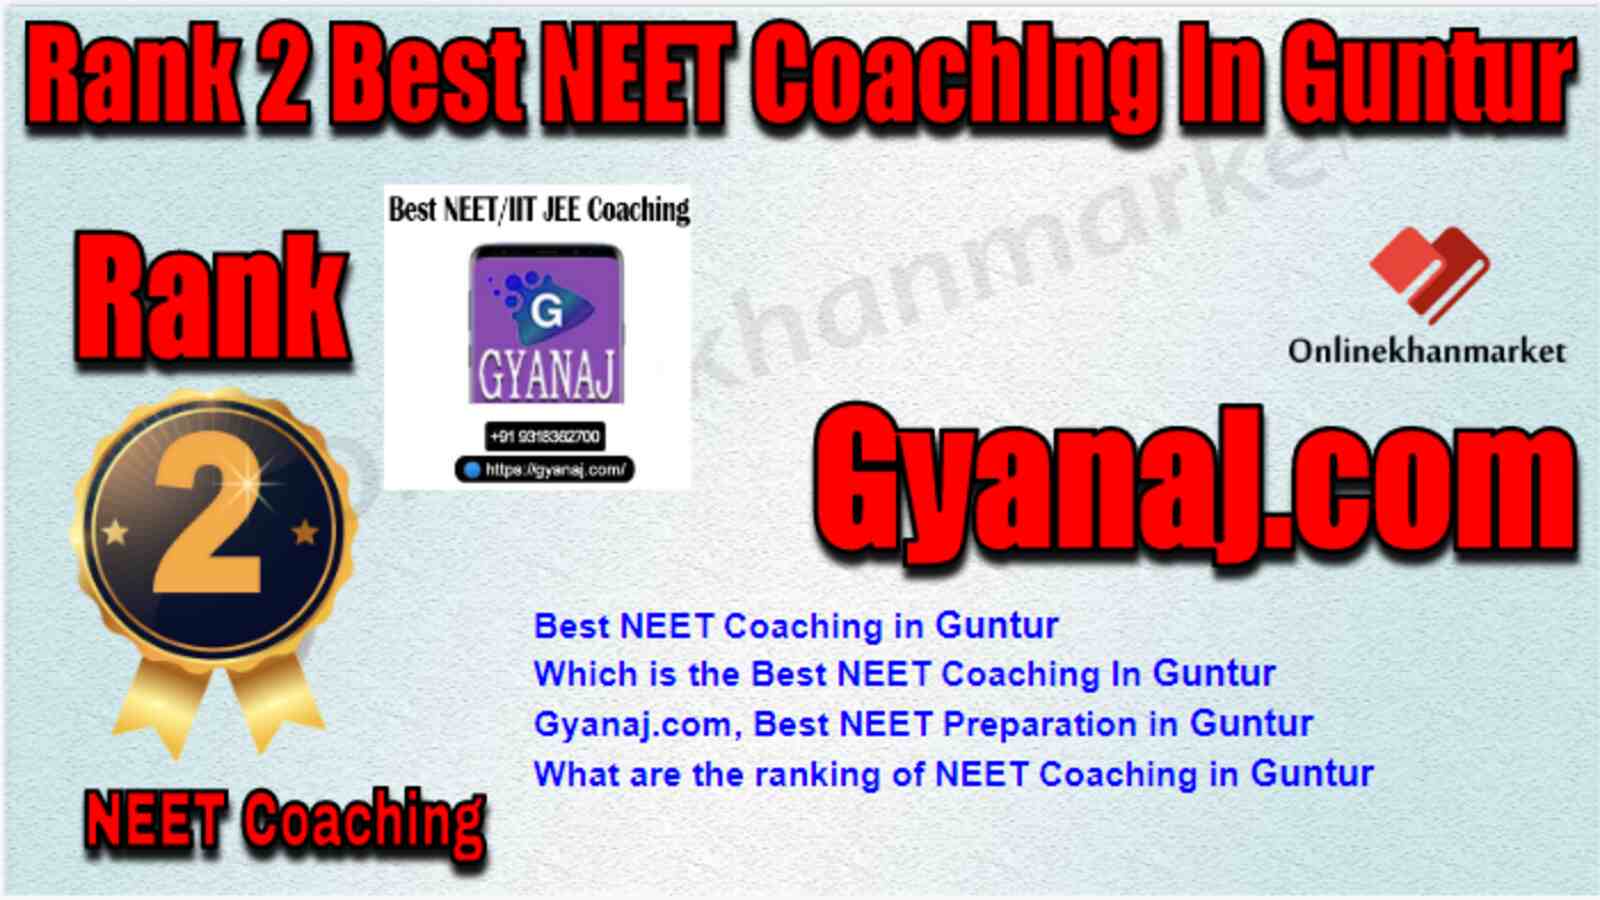 Rank 2 Best NEET Coaching in Guntur